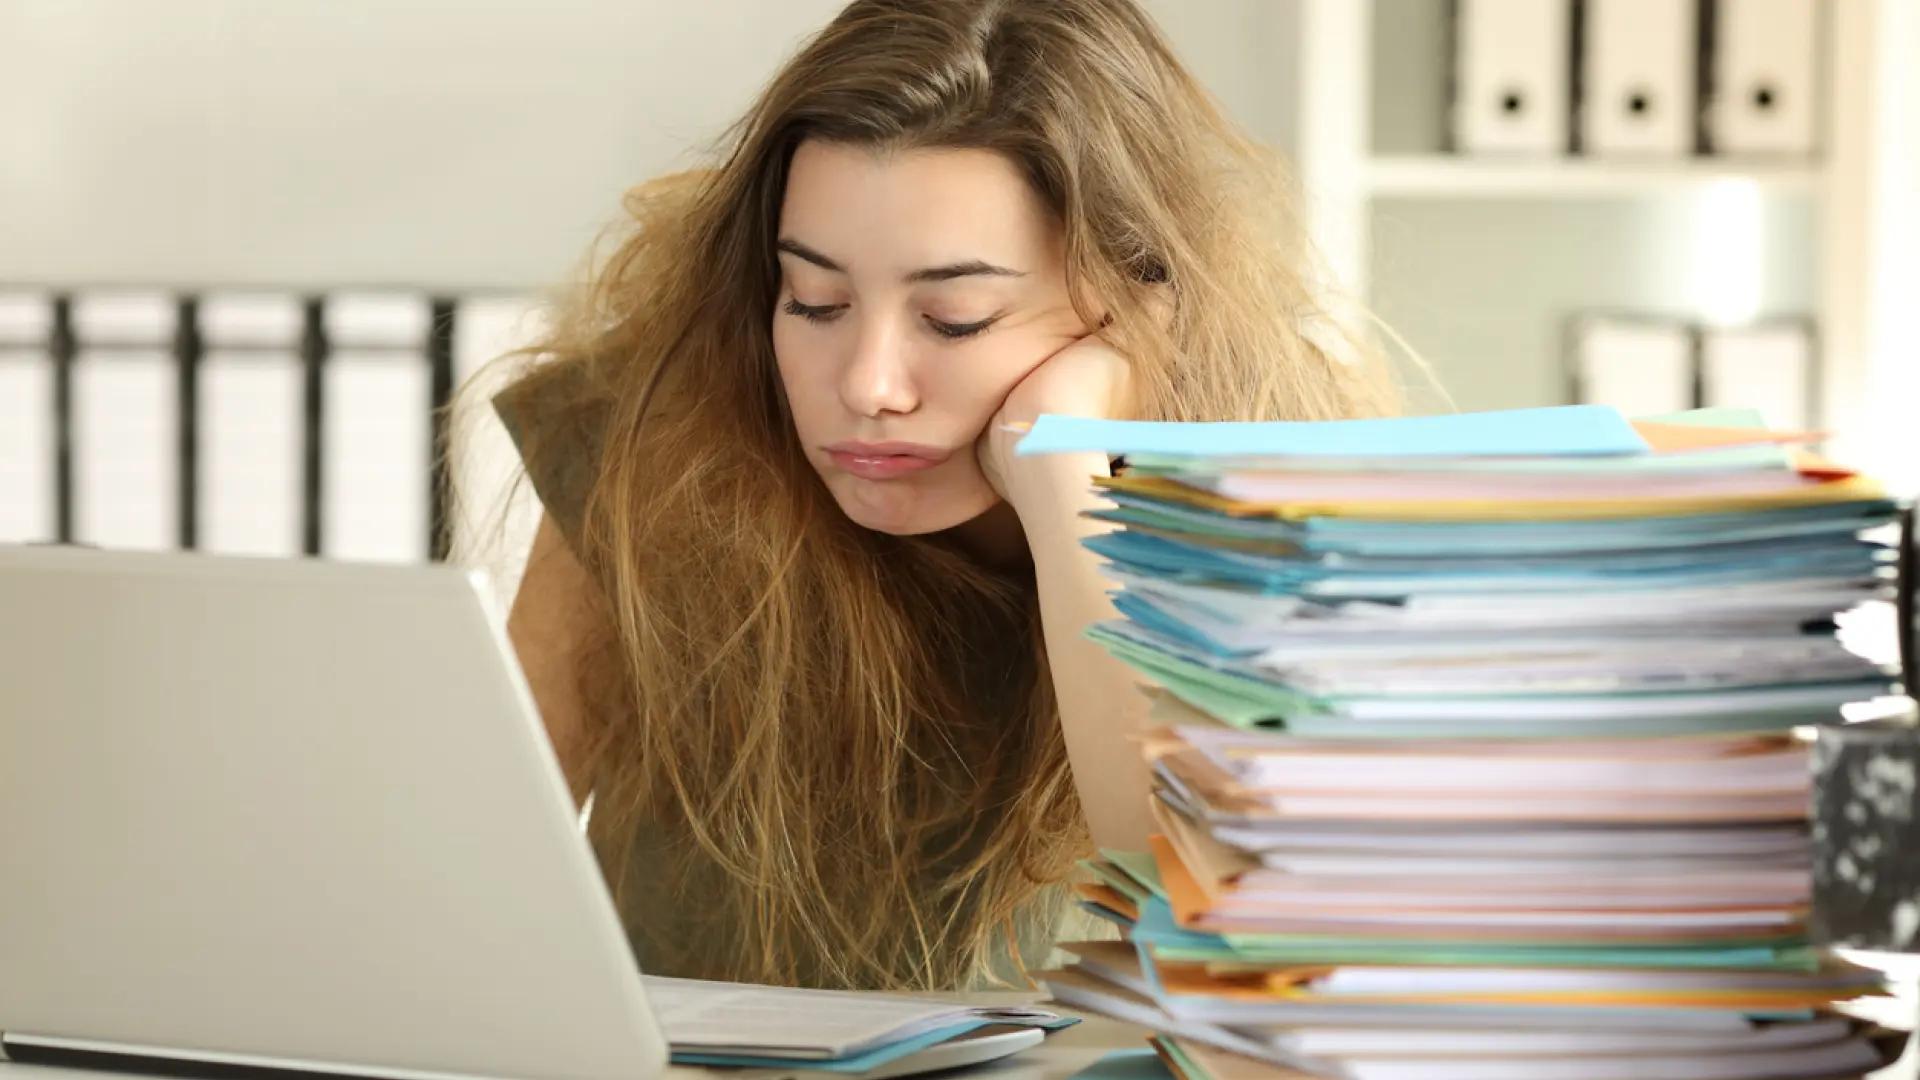 causas psicologicas de la procrastinacion - Qué pasa en el cerebro de un procrastinador